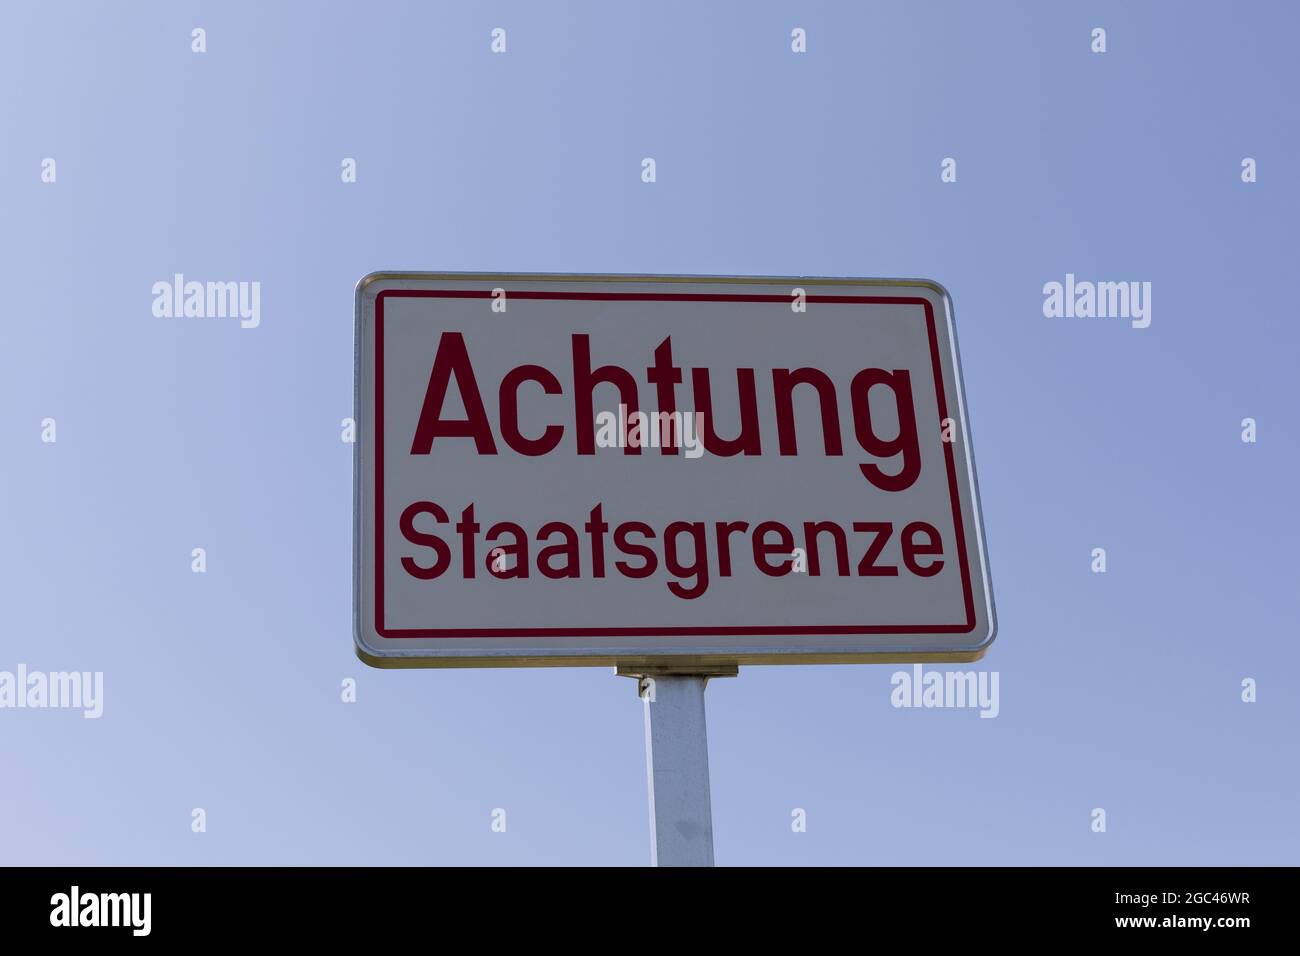 Achtung Staatsgrenze sign, Attention state border sign, Austria, Österreich Stock Photo